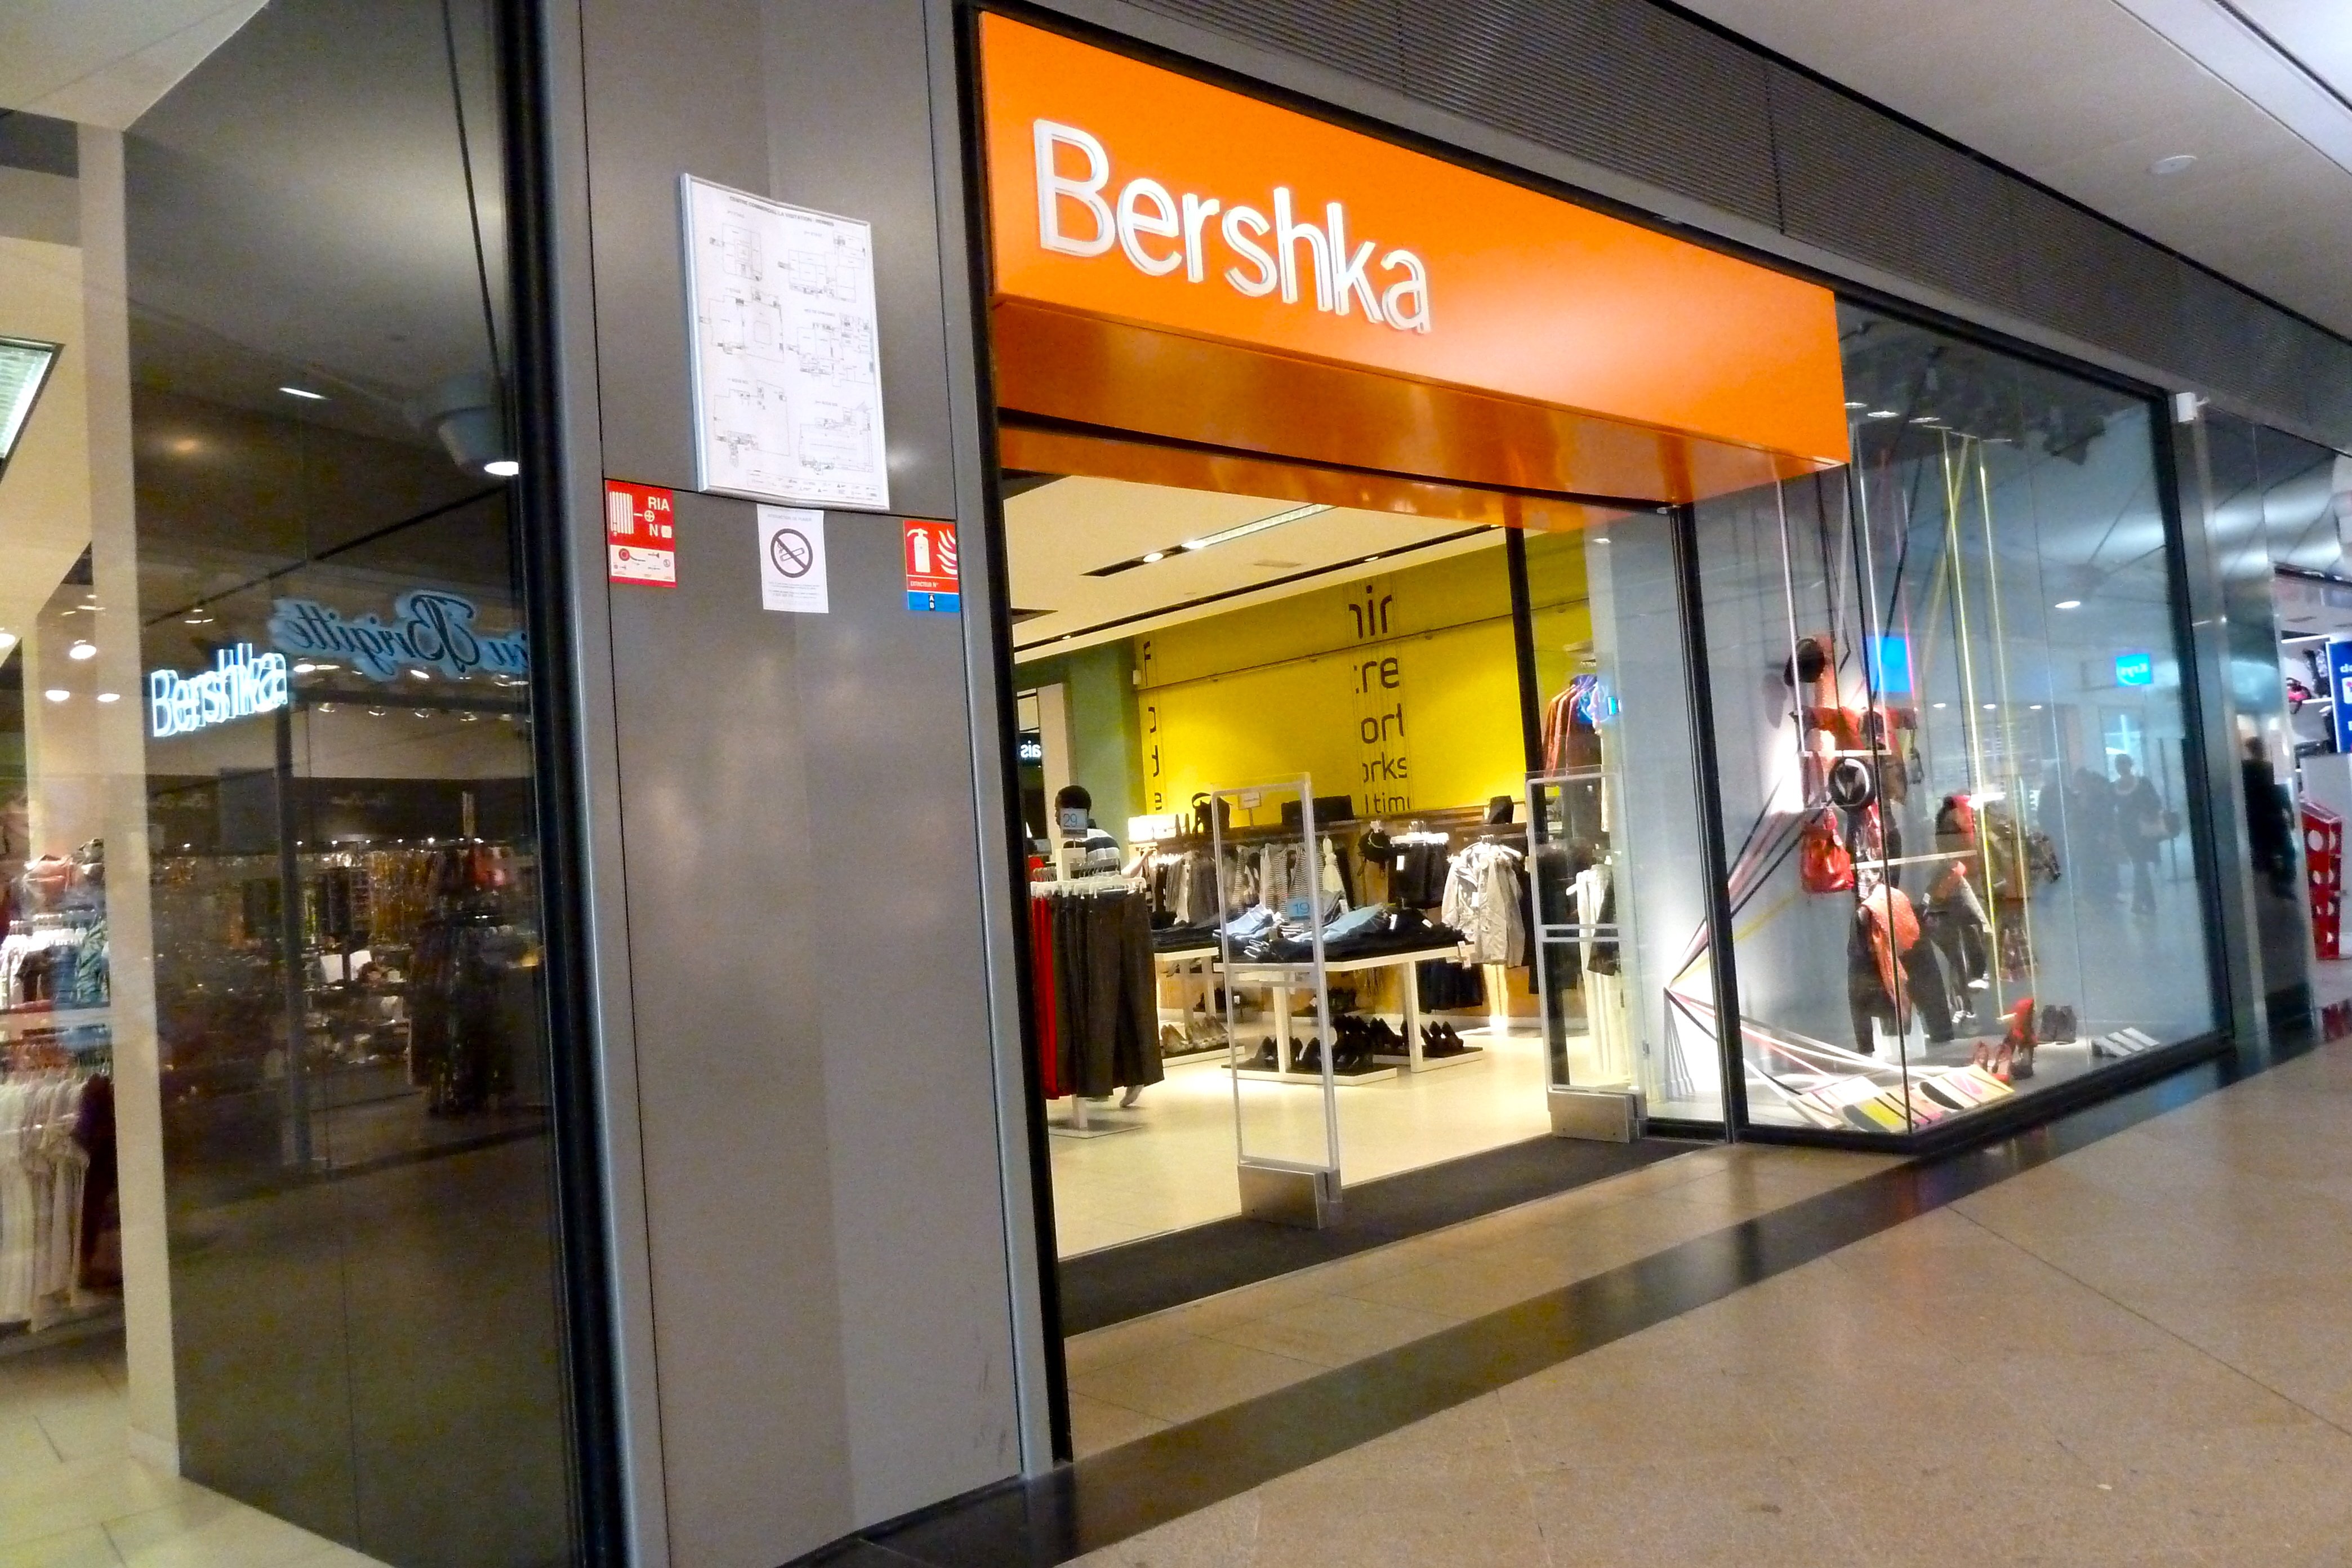 Esta bermuda denim es lo más vendido ahora en Bershka España